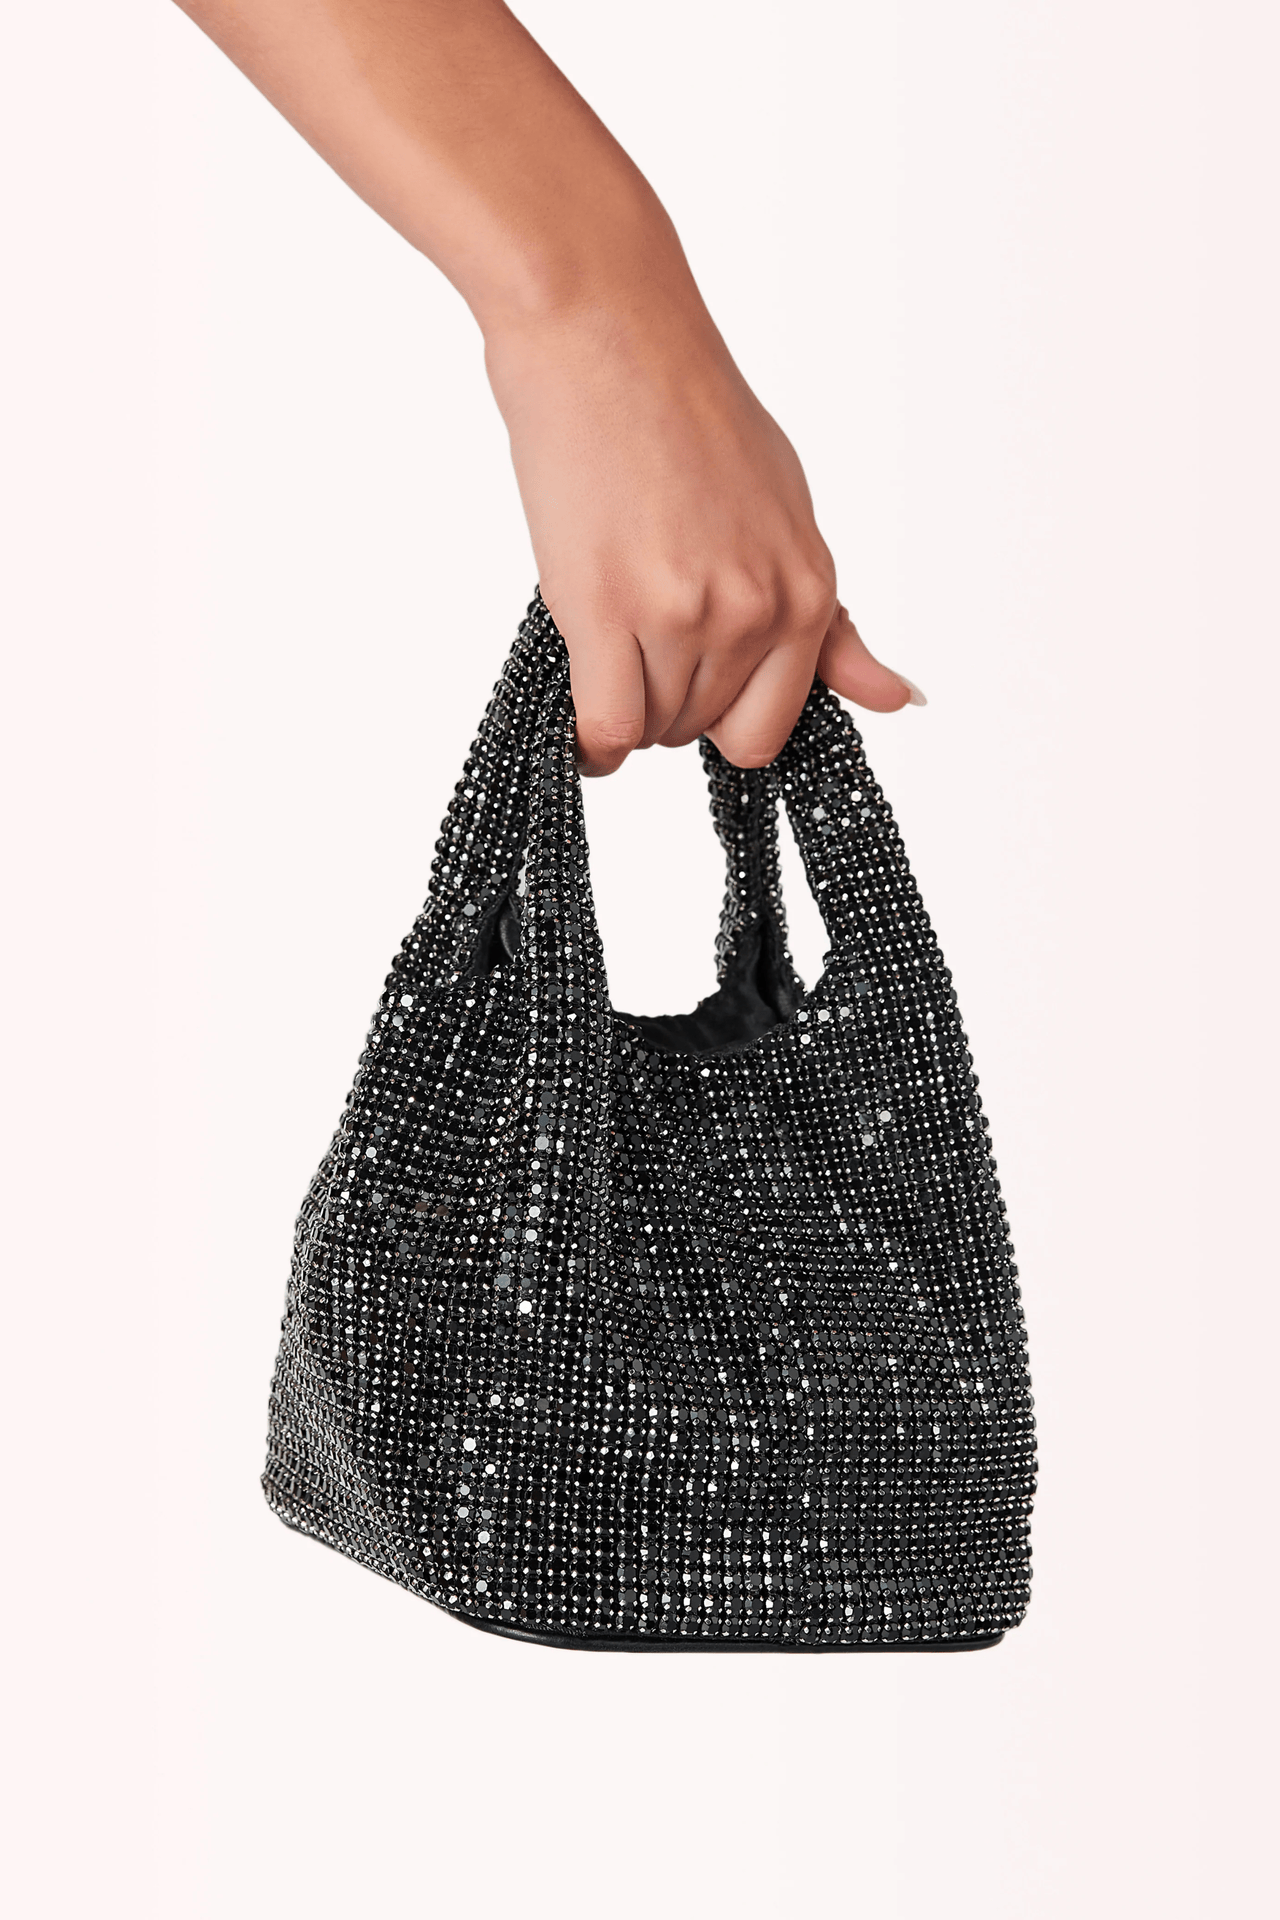 Tamara Rhinestone Handbag Black, Bag by Billini Shoes | LIT Boutique